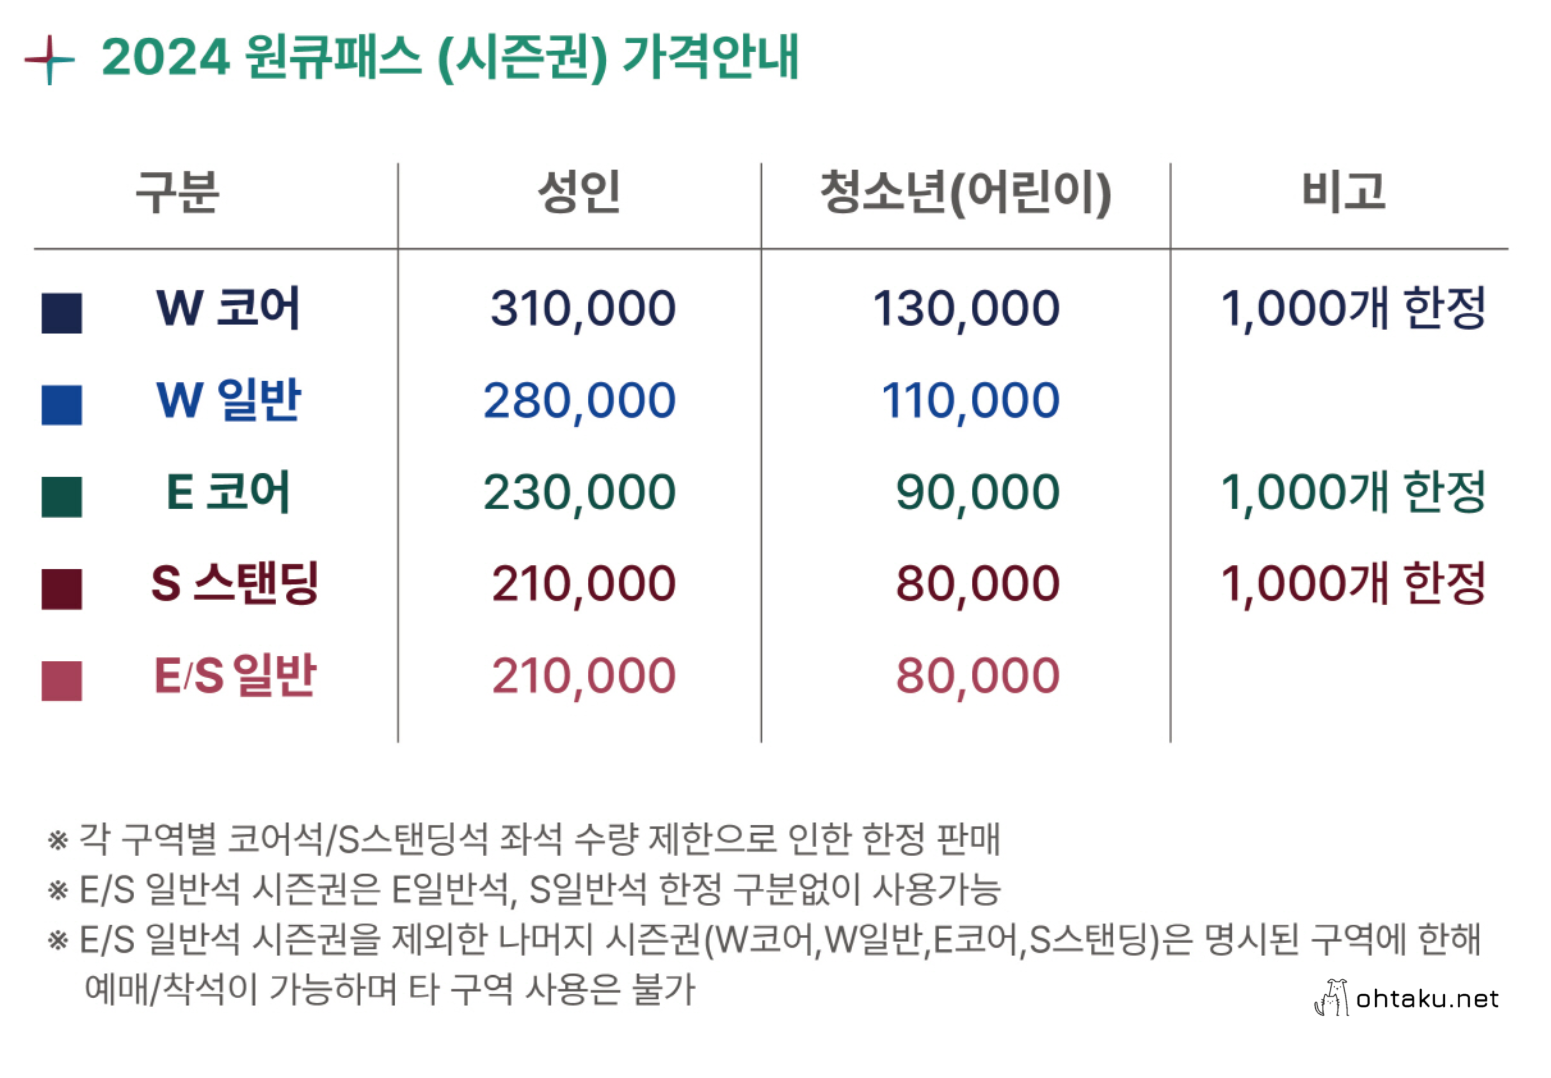 대전하나시티즌, 24년 시즌권 구매 및 환불 요청 후기, (부제 - 프론트의 삽질)